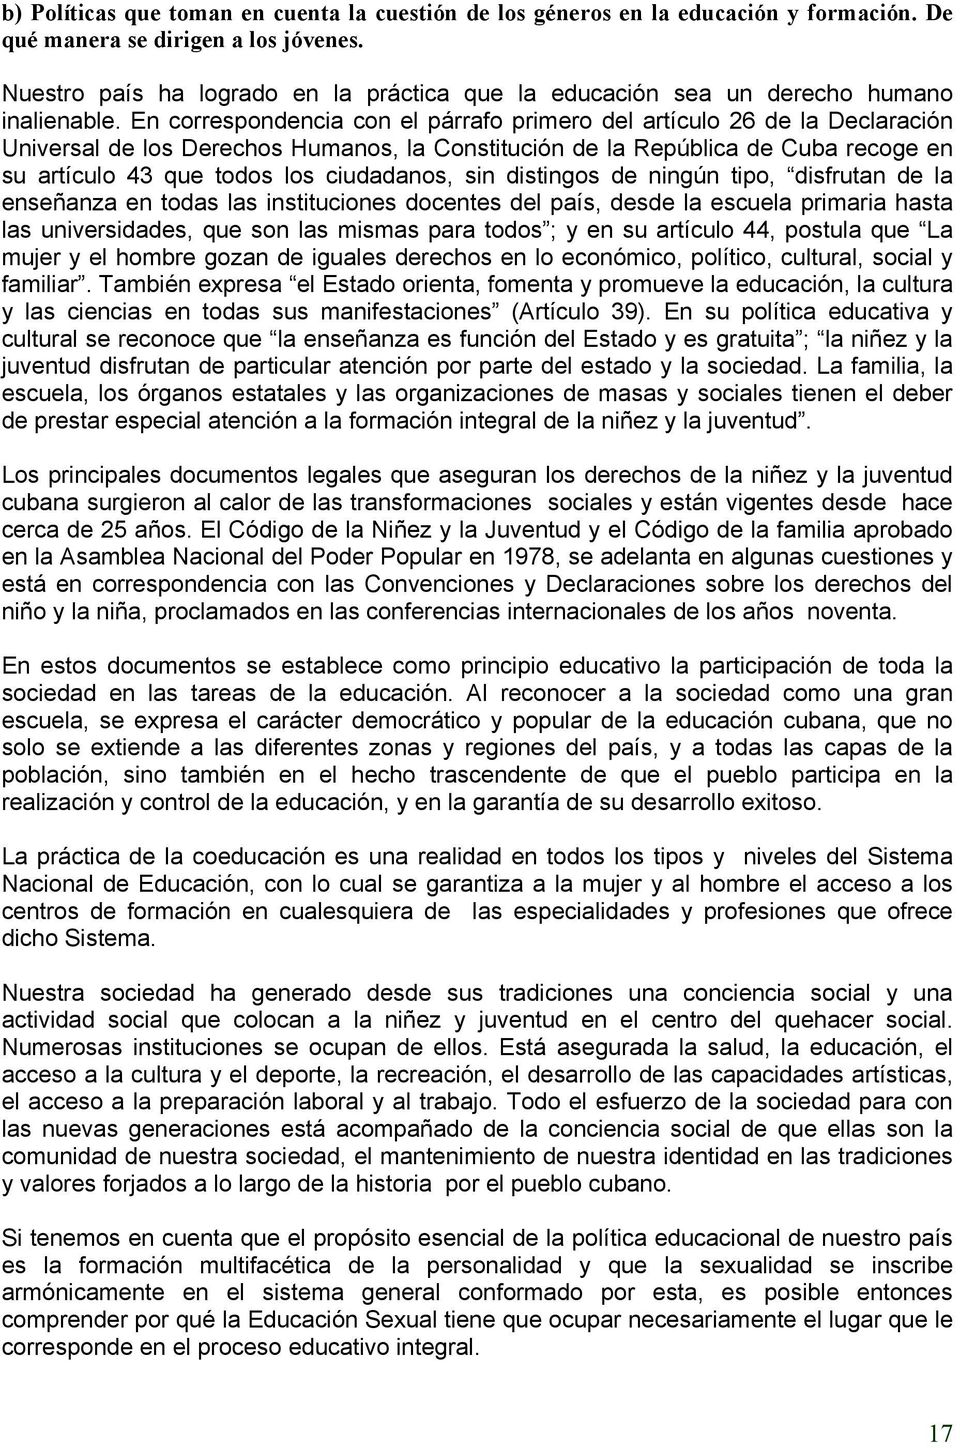 En correspondencia con el párrafo primero del artículo 26 de la Declaración Universal de los Derechos Humanos, la Constitución de la República de Cuba recoge en su artículo 43 que todos los